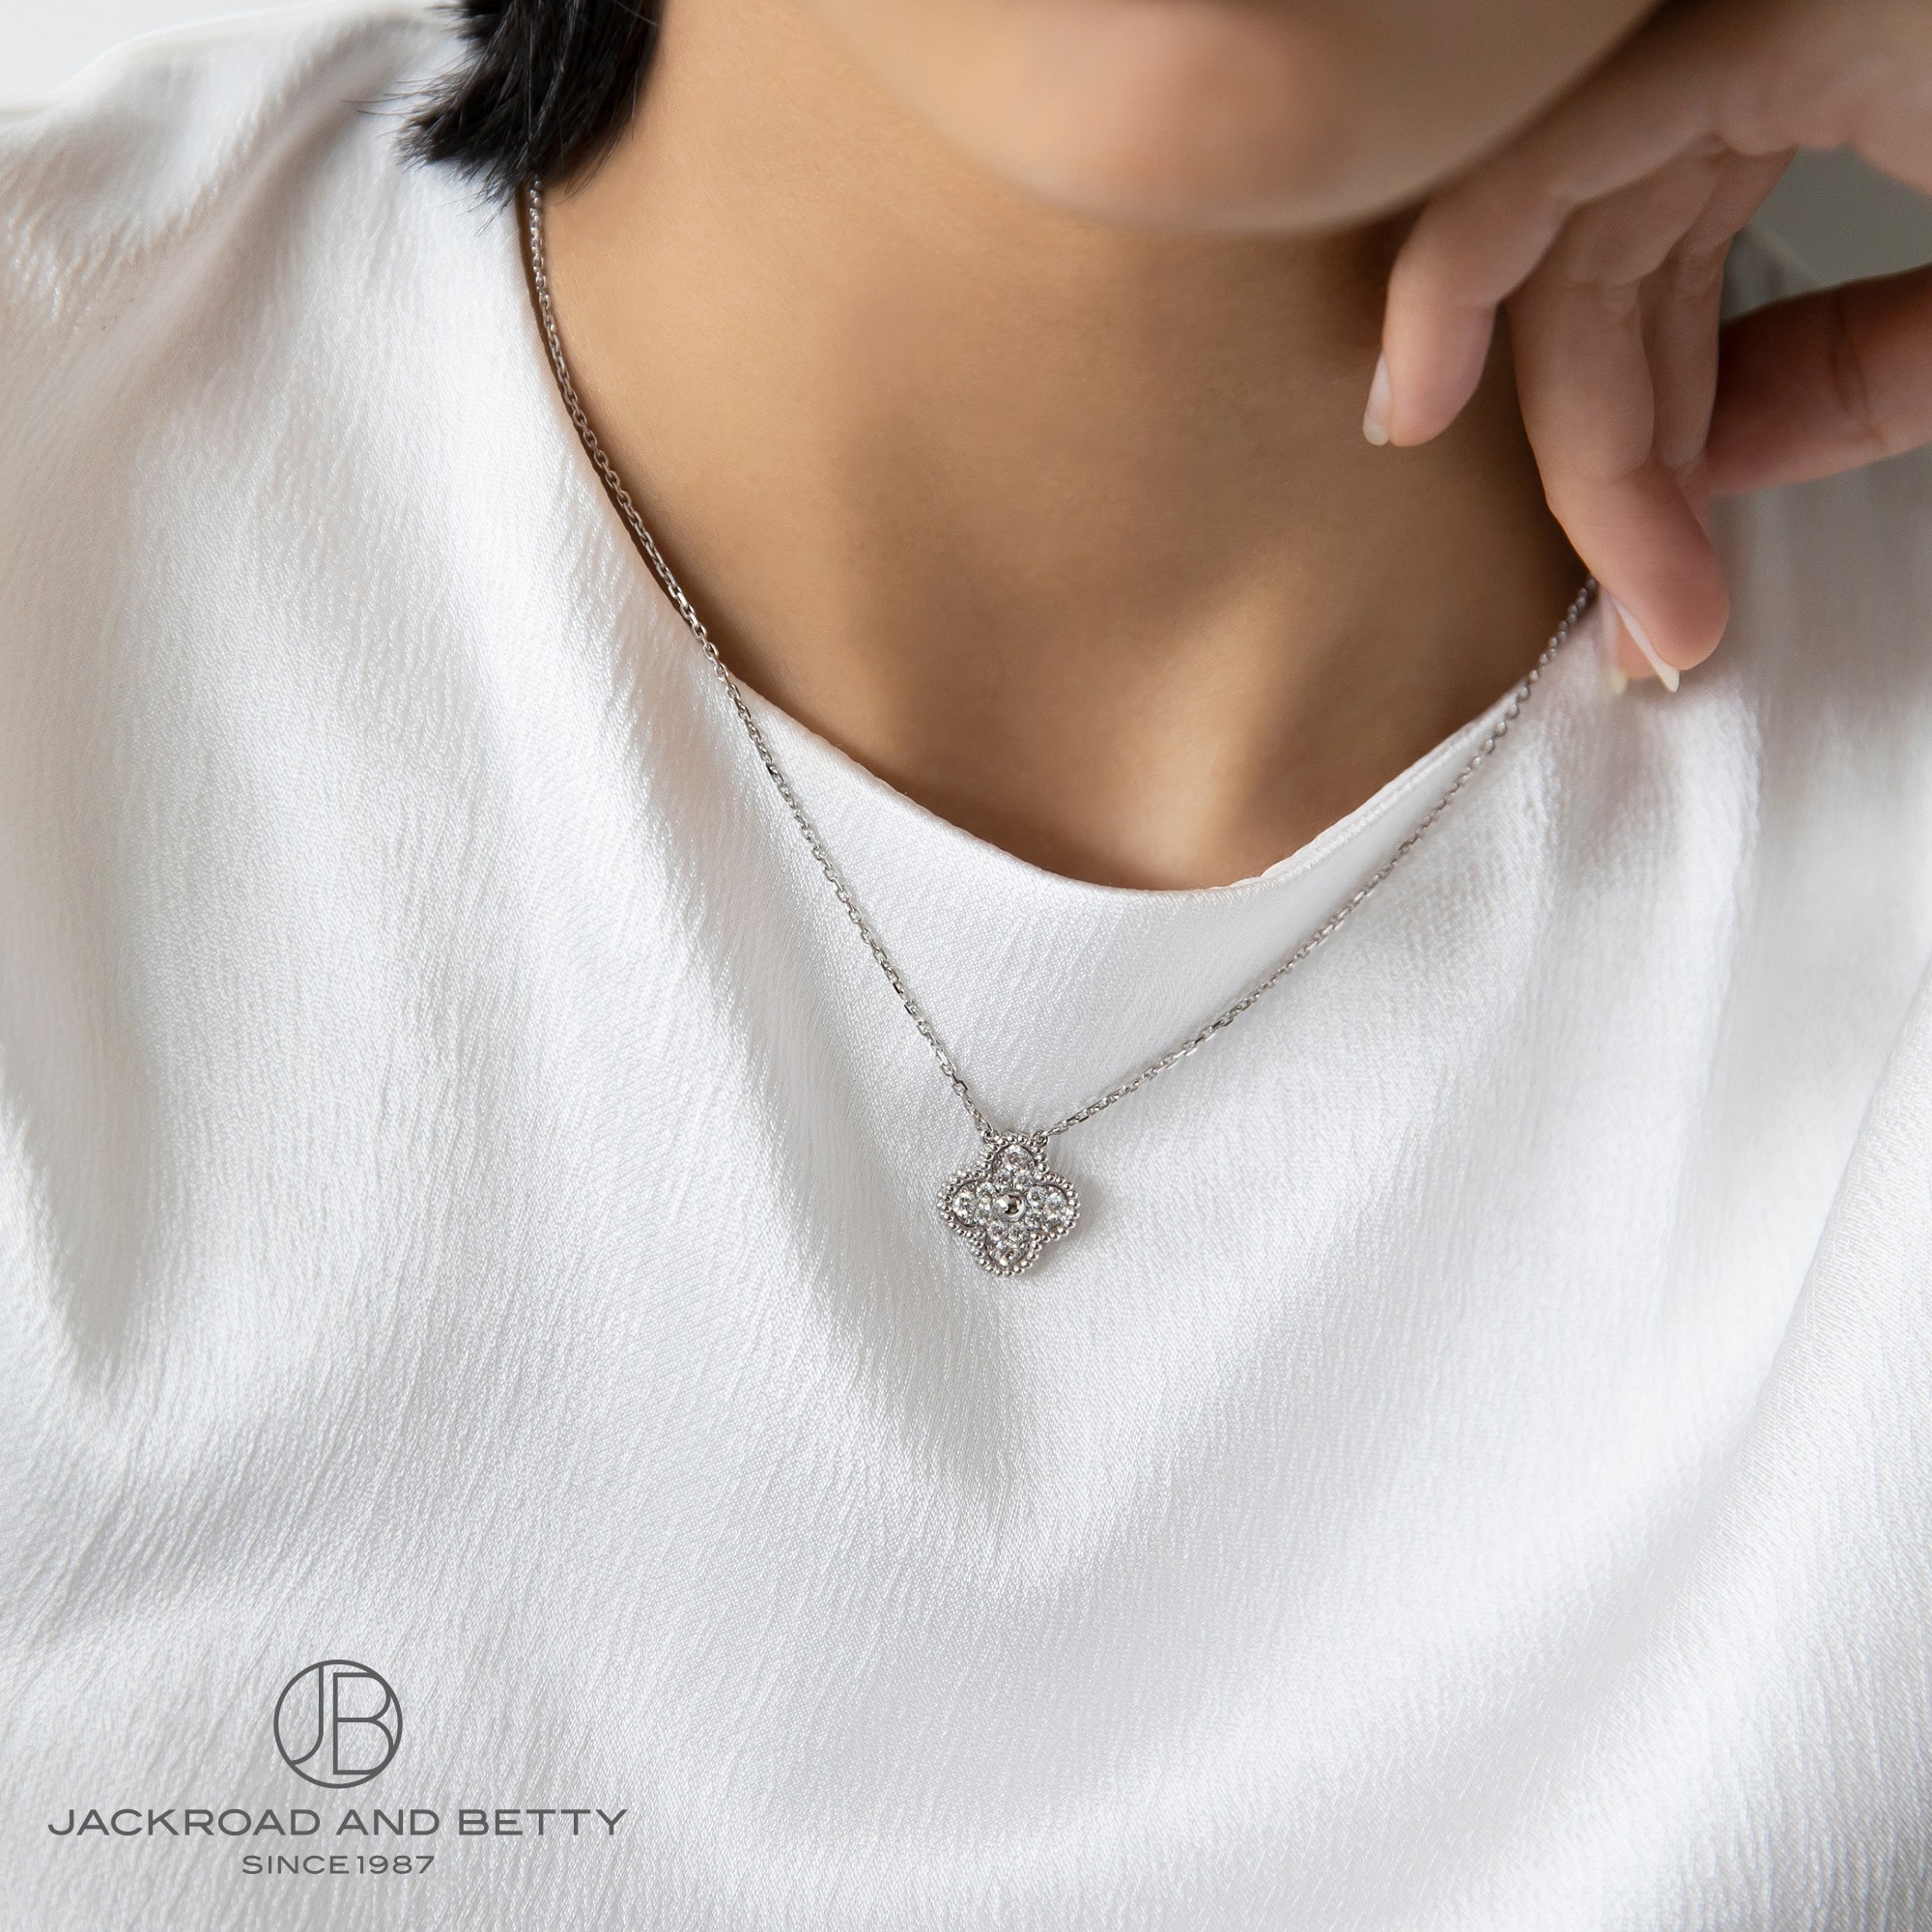 ヴァンクリーフ&アーペル ヴィンテージ アルハンブラ ダイヤモンド ネックレス VCARA46100 女性モデル着用イメージ